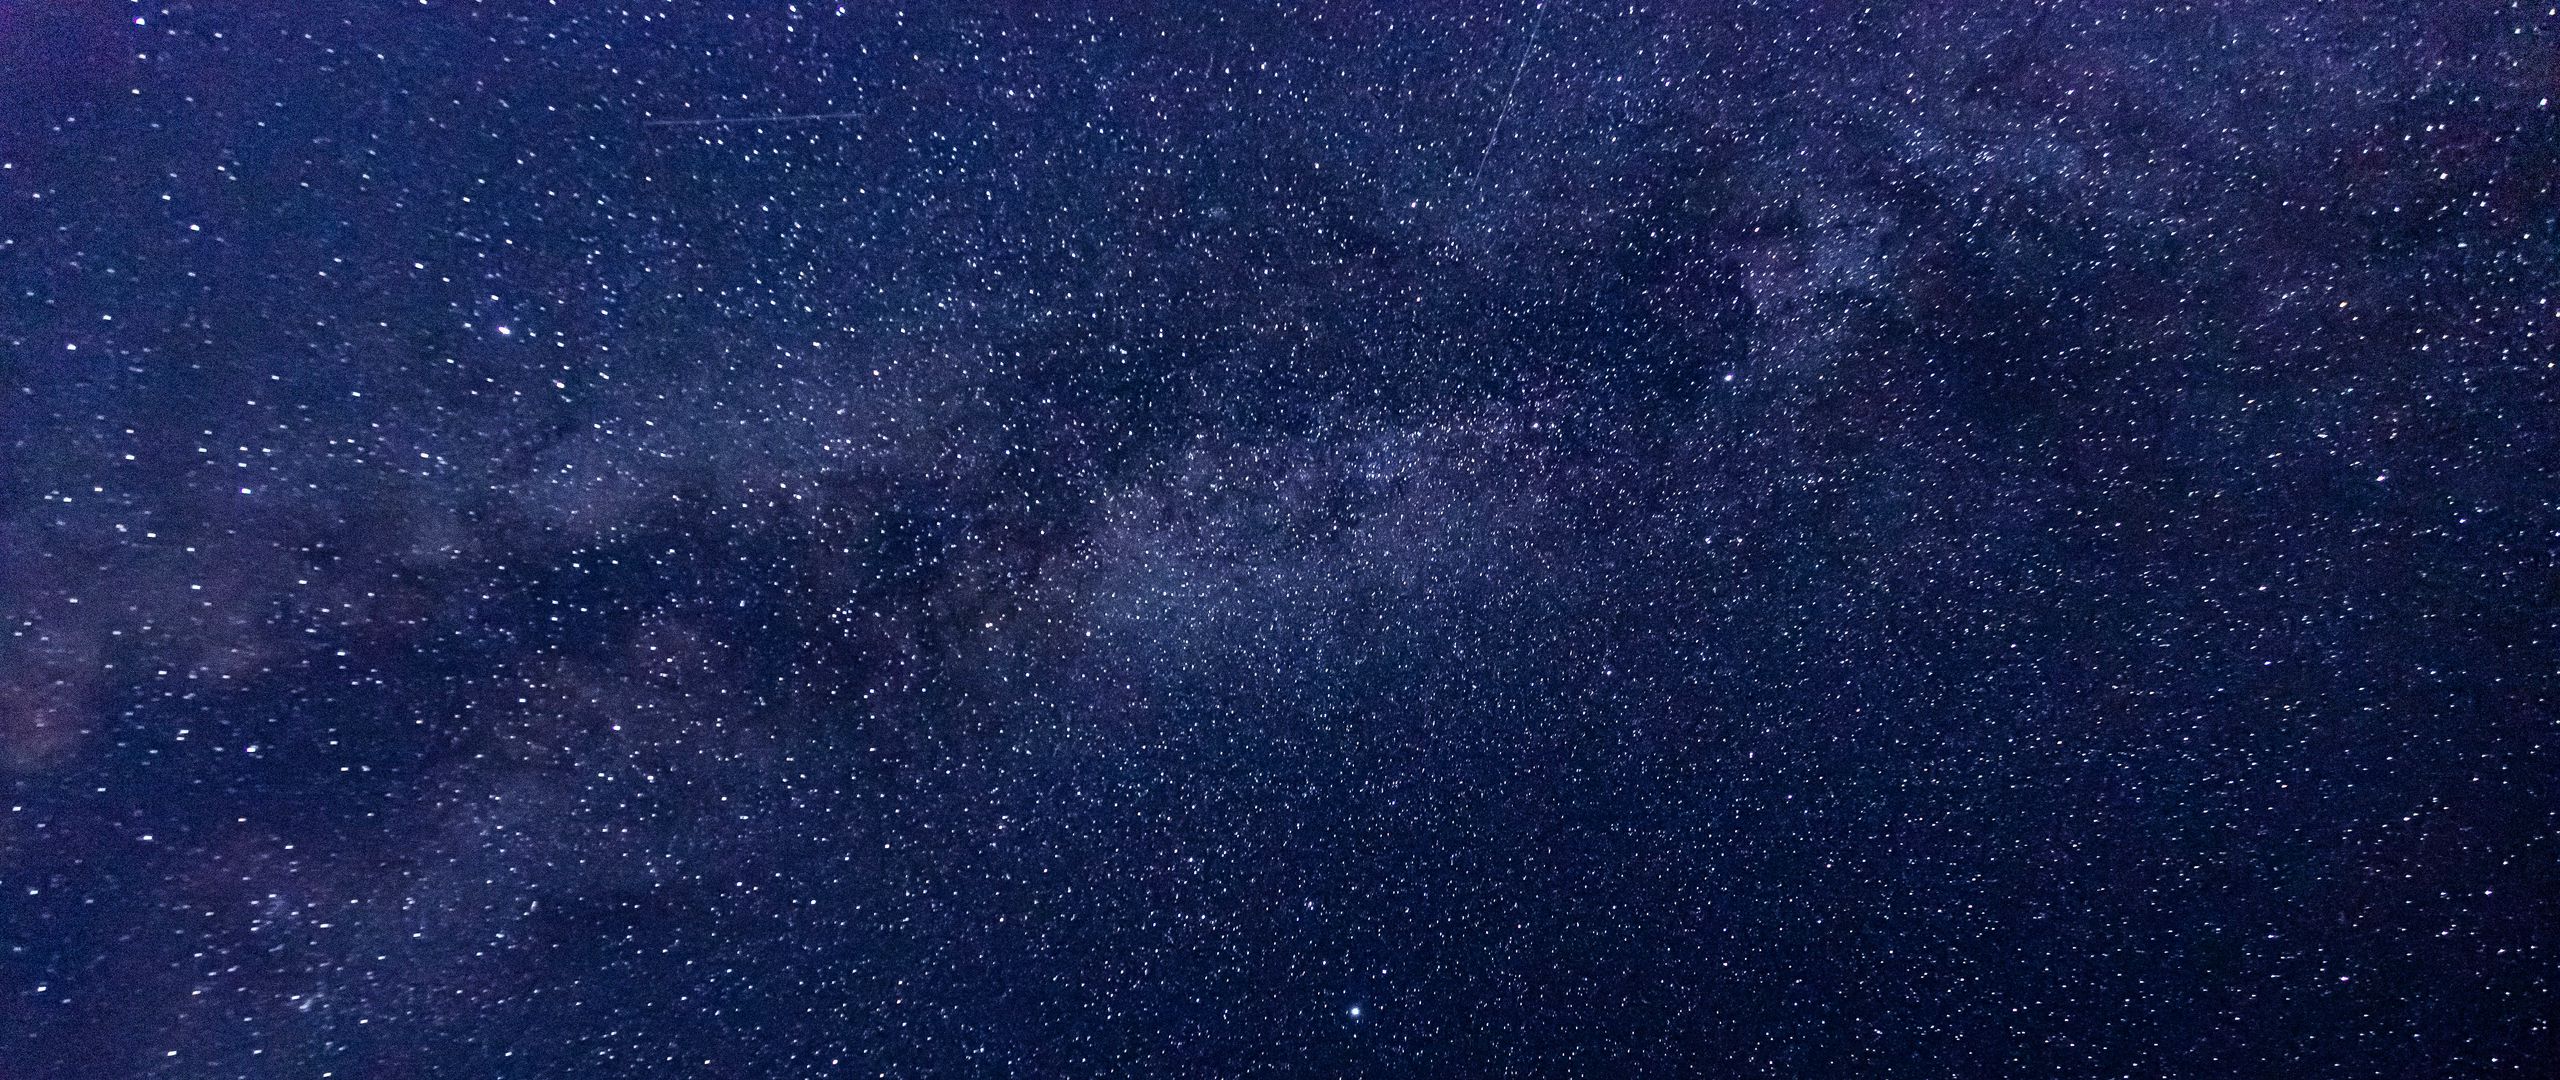 Trải nghiệm cảm giác đắm mình vào bầu trời rực rỡ sao trên chiếc máy tính của bạn với hình nền thiên hà 2560x1080 đầy tuyệt đẹp và mê hoặc này. Hãy tải ngay bức ảnh kỳ diệu này của thiên hà đầy ngôi sao và trải nghiệm khoảnh khắc thú vị nhất mà bạn từng trải qua.